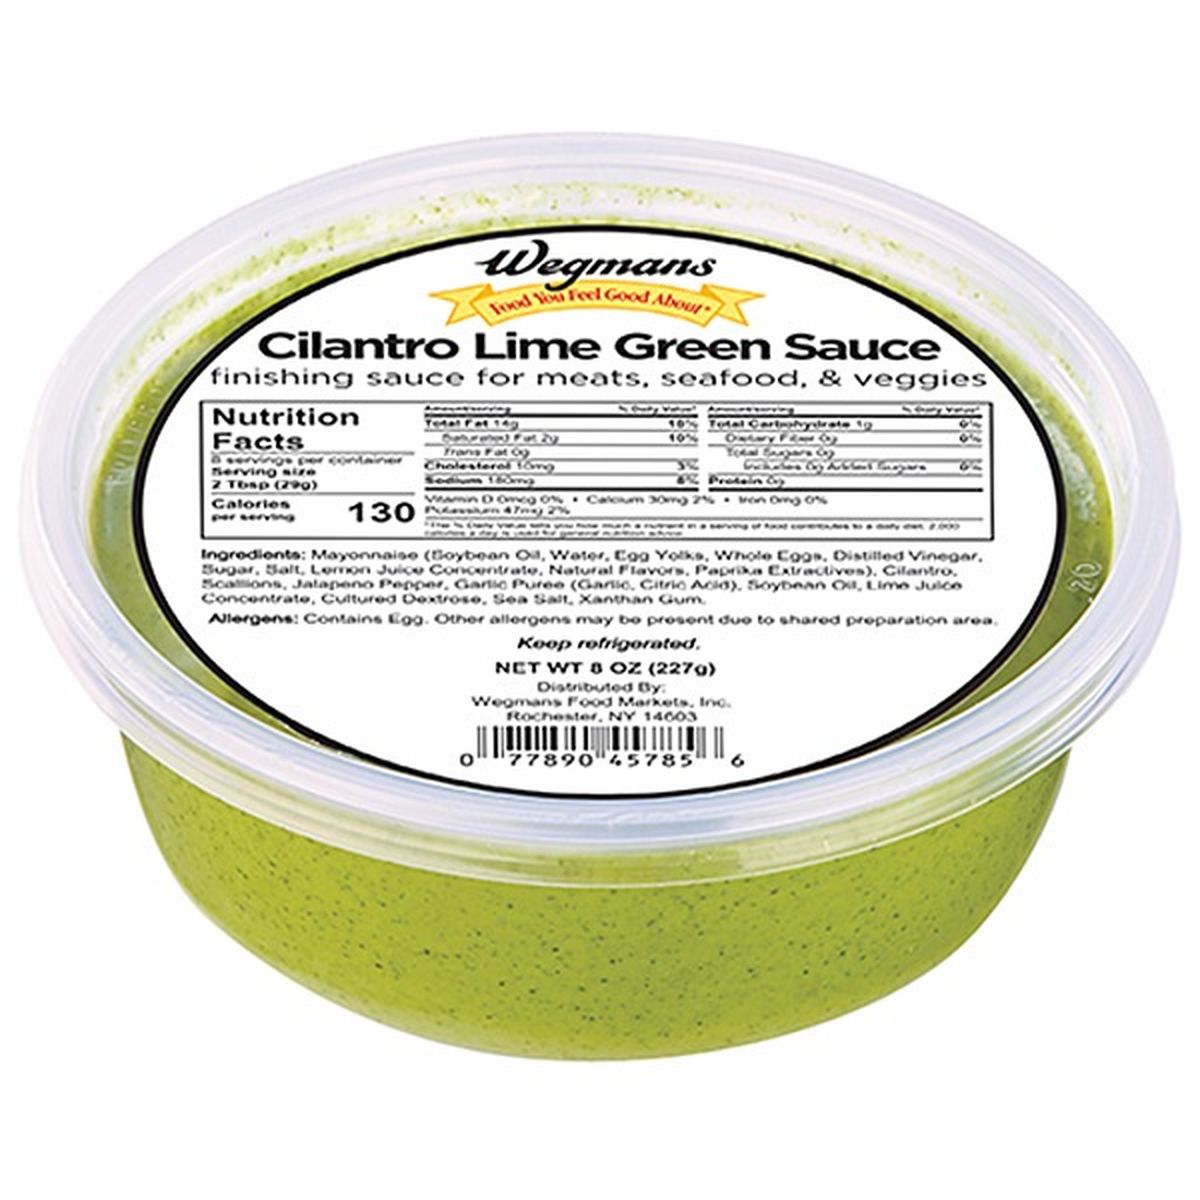 Calories in Wegmans Cilantro Lime Green Sauce